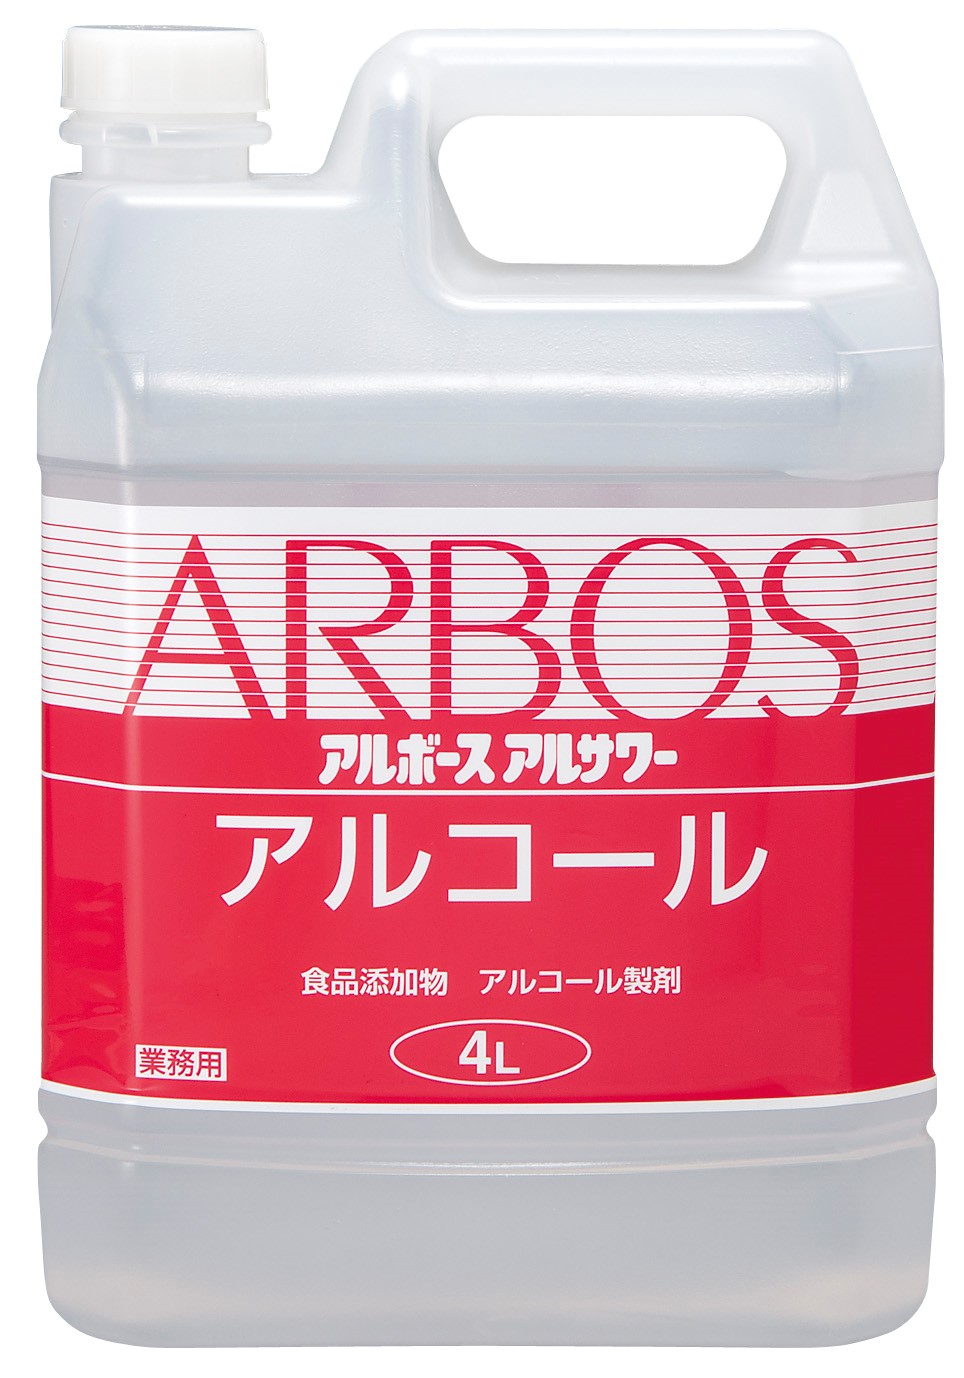 arbos-02